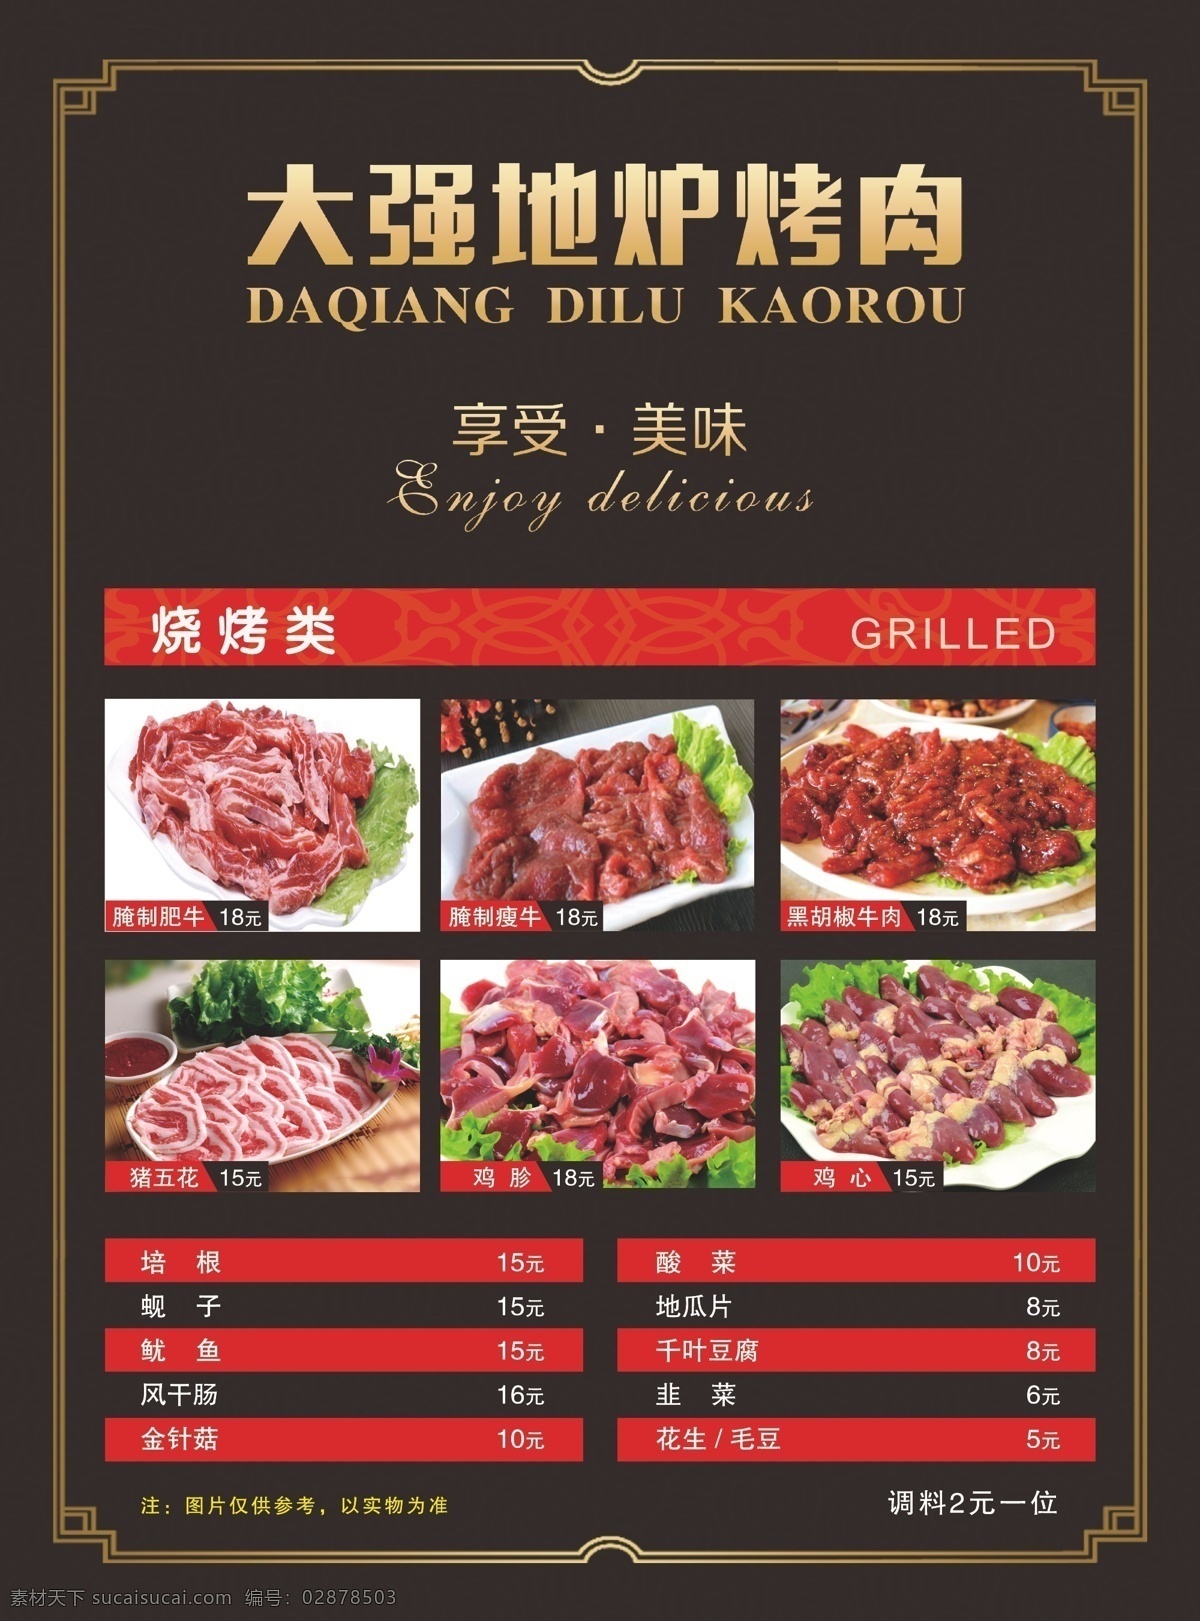 地炉烤肉菜单 烤肉单页 dm单 地炉 烧烤 韩式烤肉 宣传单 菜单